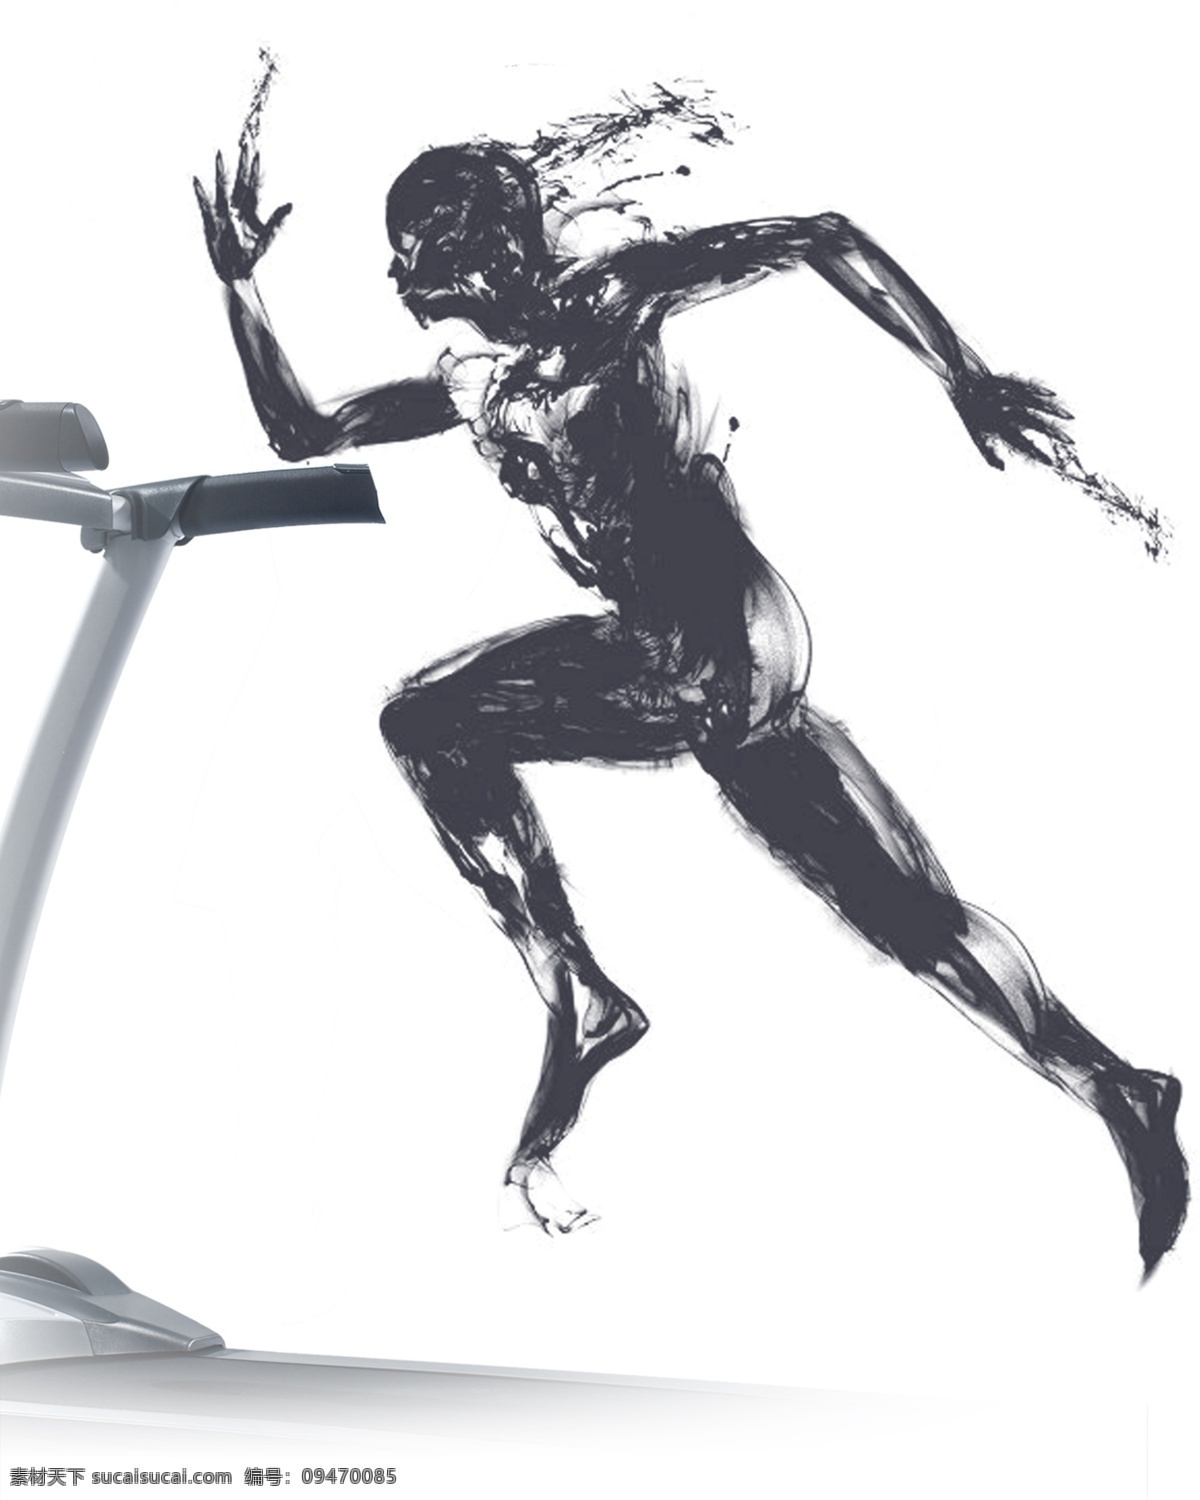 水墨 人物 运动 图 psd素材 动感 水墨人物 中国风 跑步 运动风 免扣素材 白色